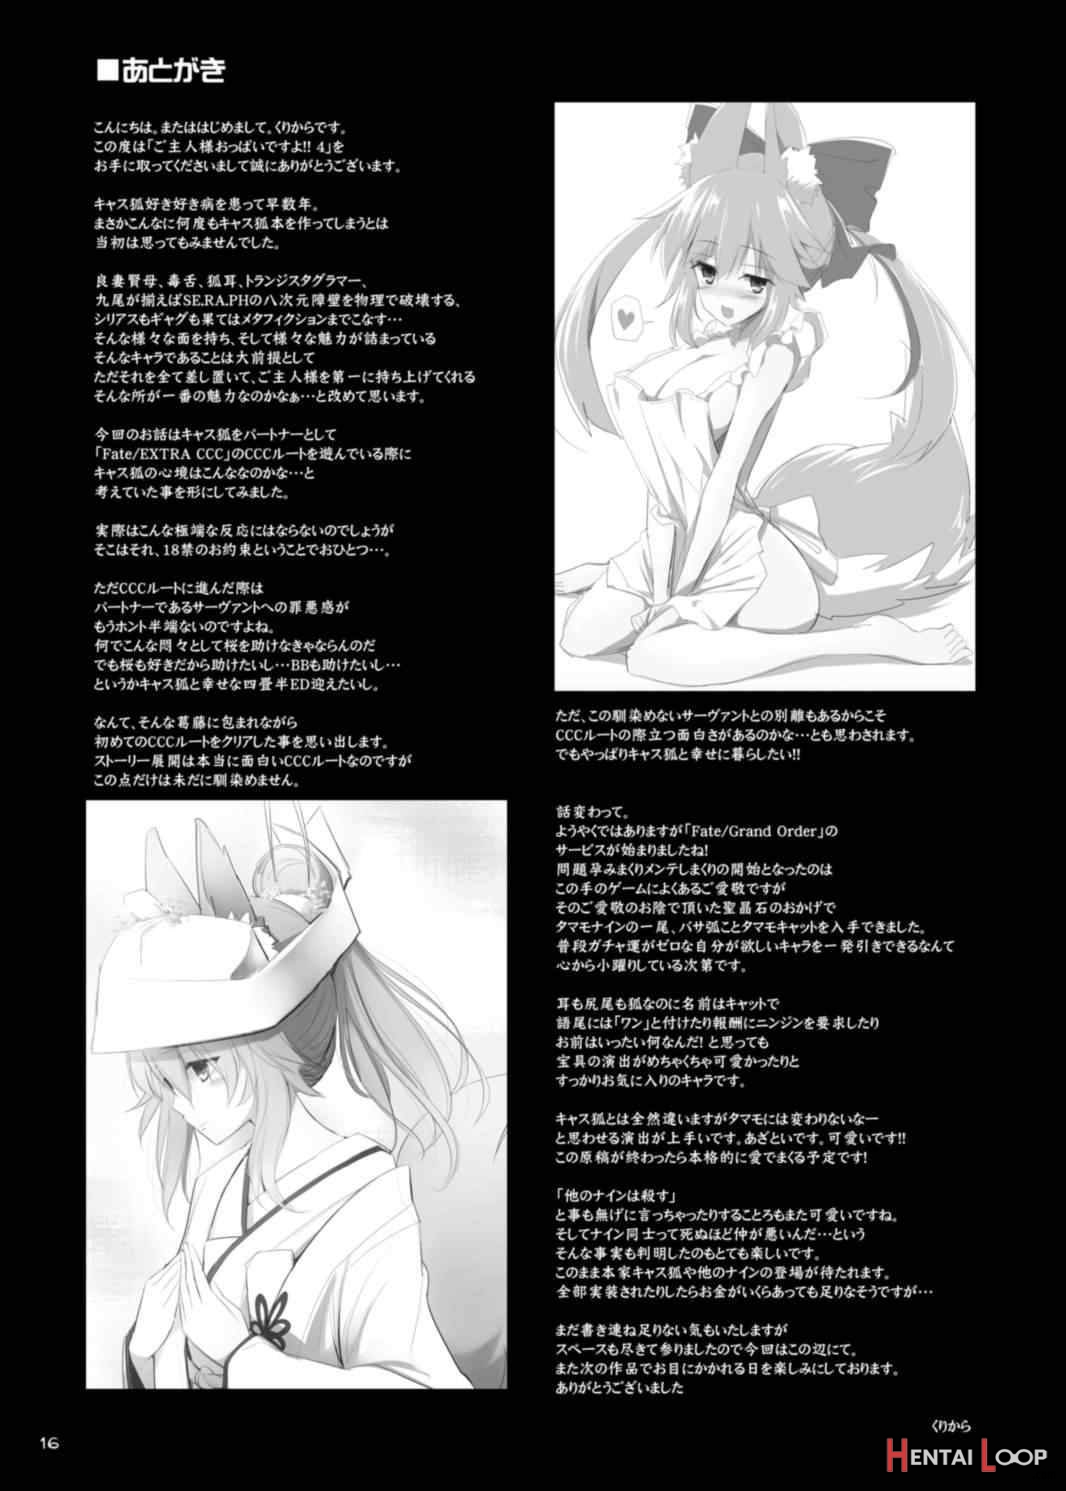 Goshujin-sama Oppai Desu Yo!! 4 page 14